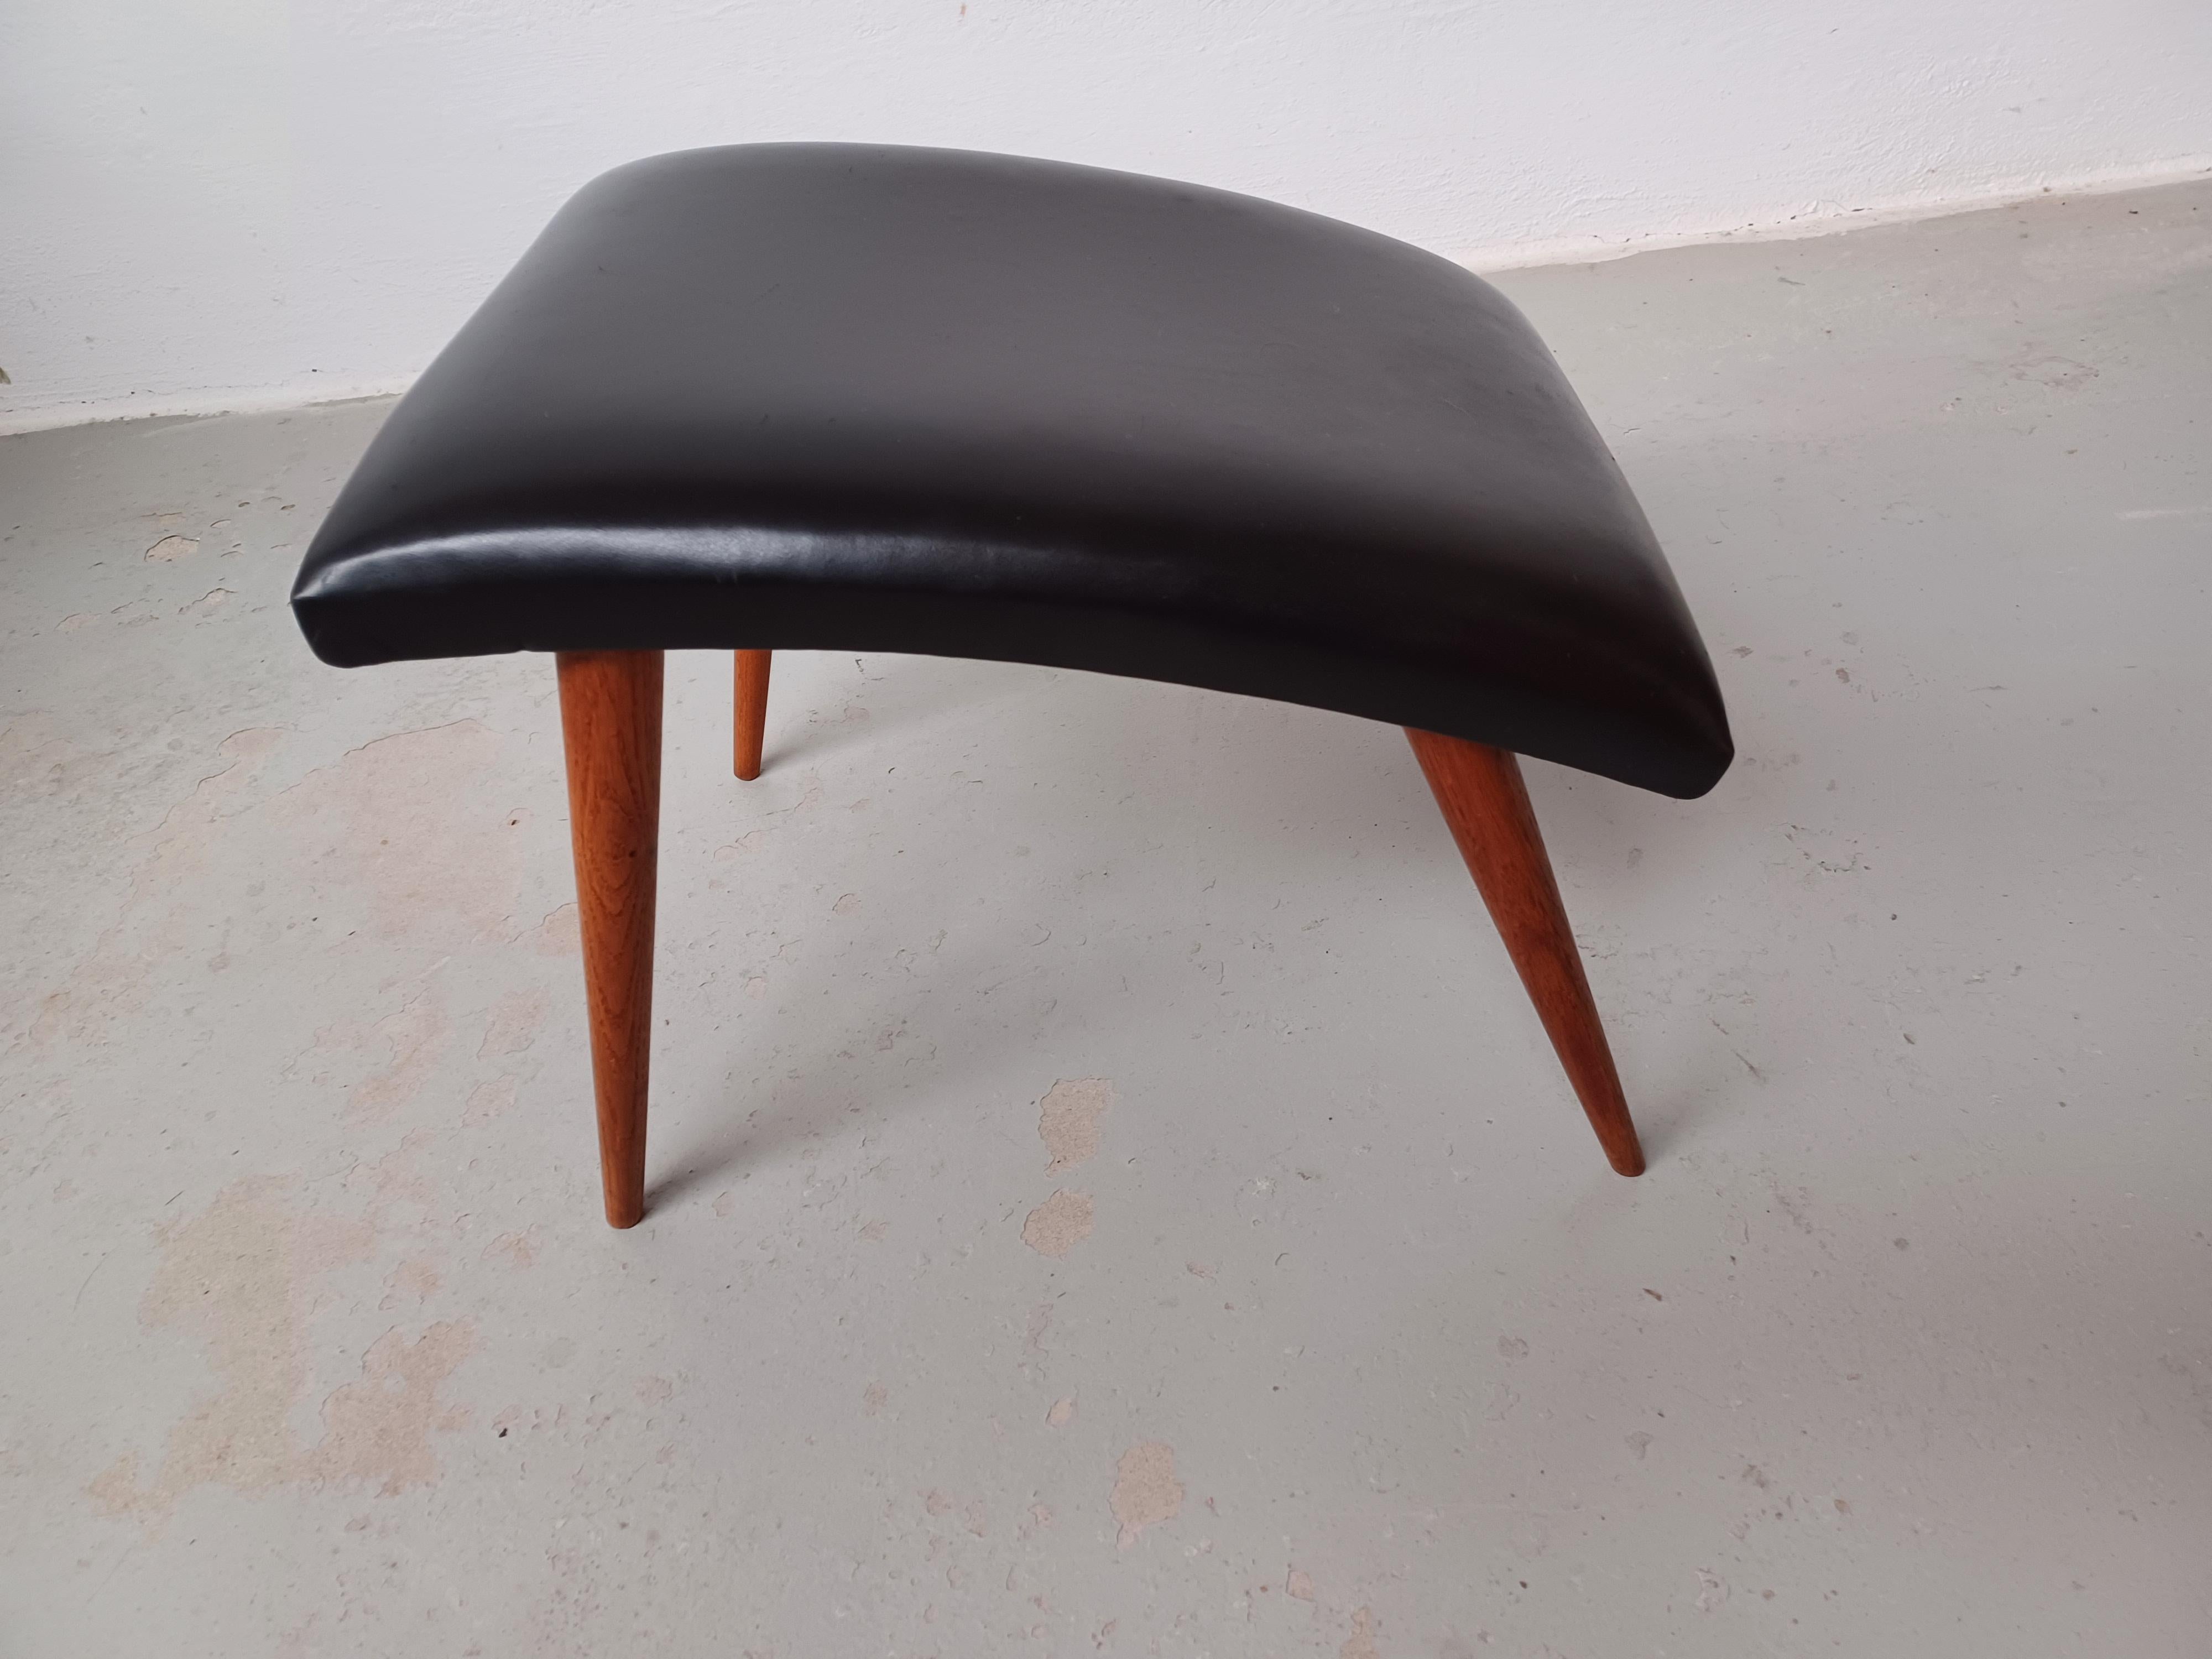 Tabouret danois des années 1960 repeint et recouvert de cuir.

Tabouret danois au design moderne scandinave minimaliste mais avancé, avec ses lignes droites et simples combinées à une assise et des pieds aux courbes organiques.

Le pouf a été